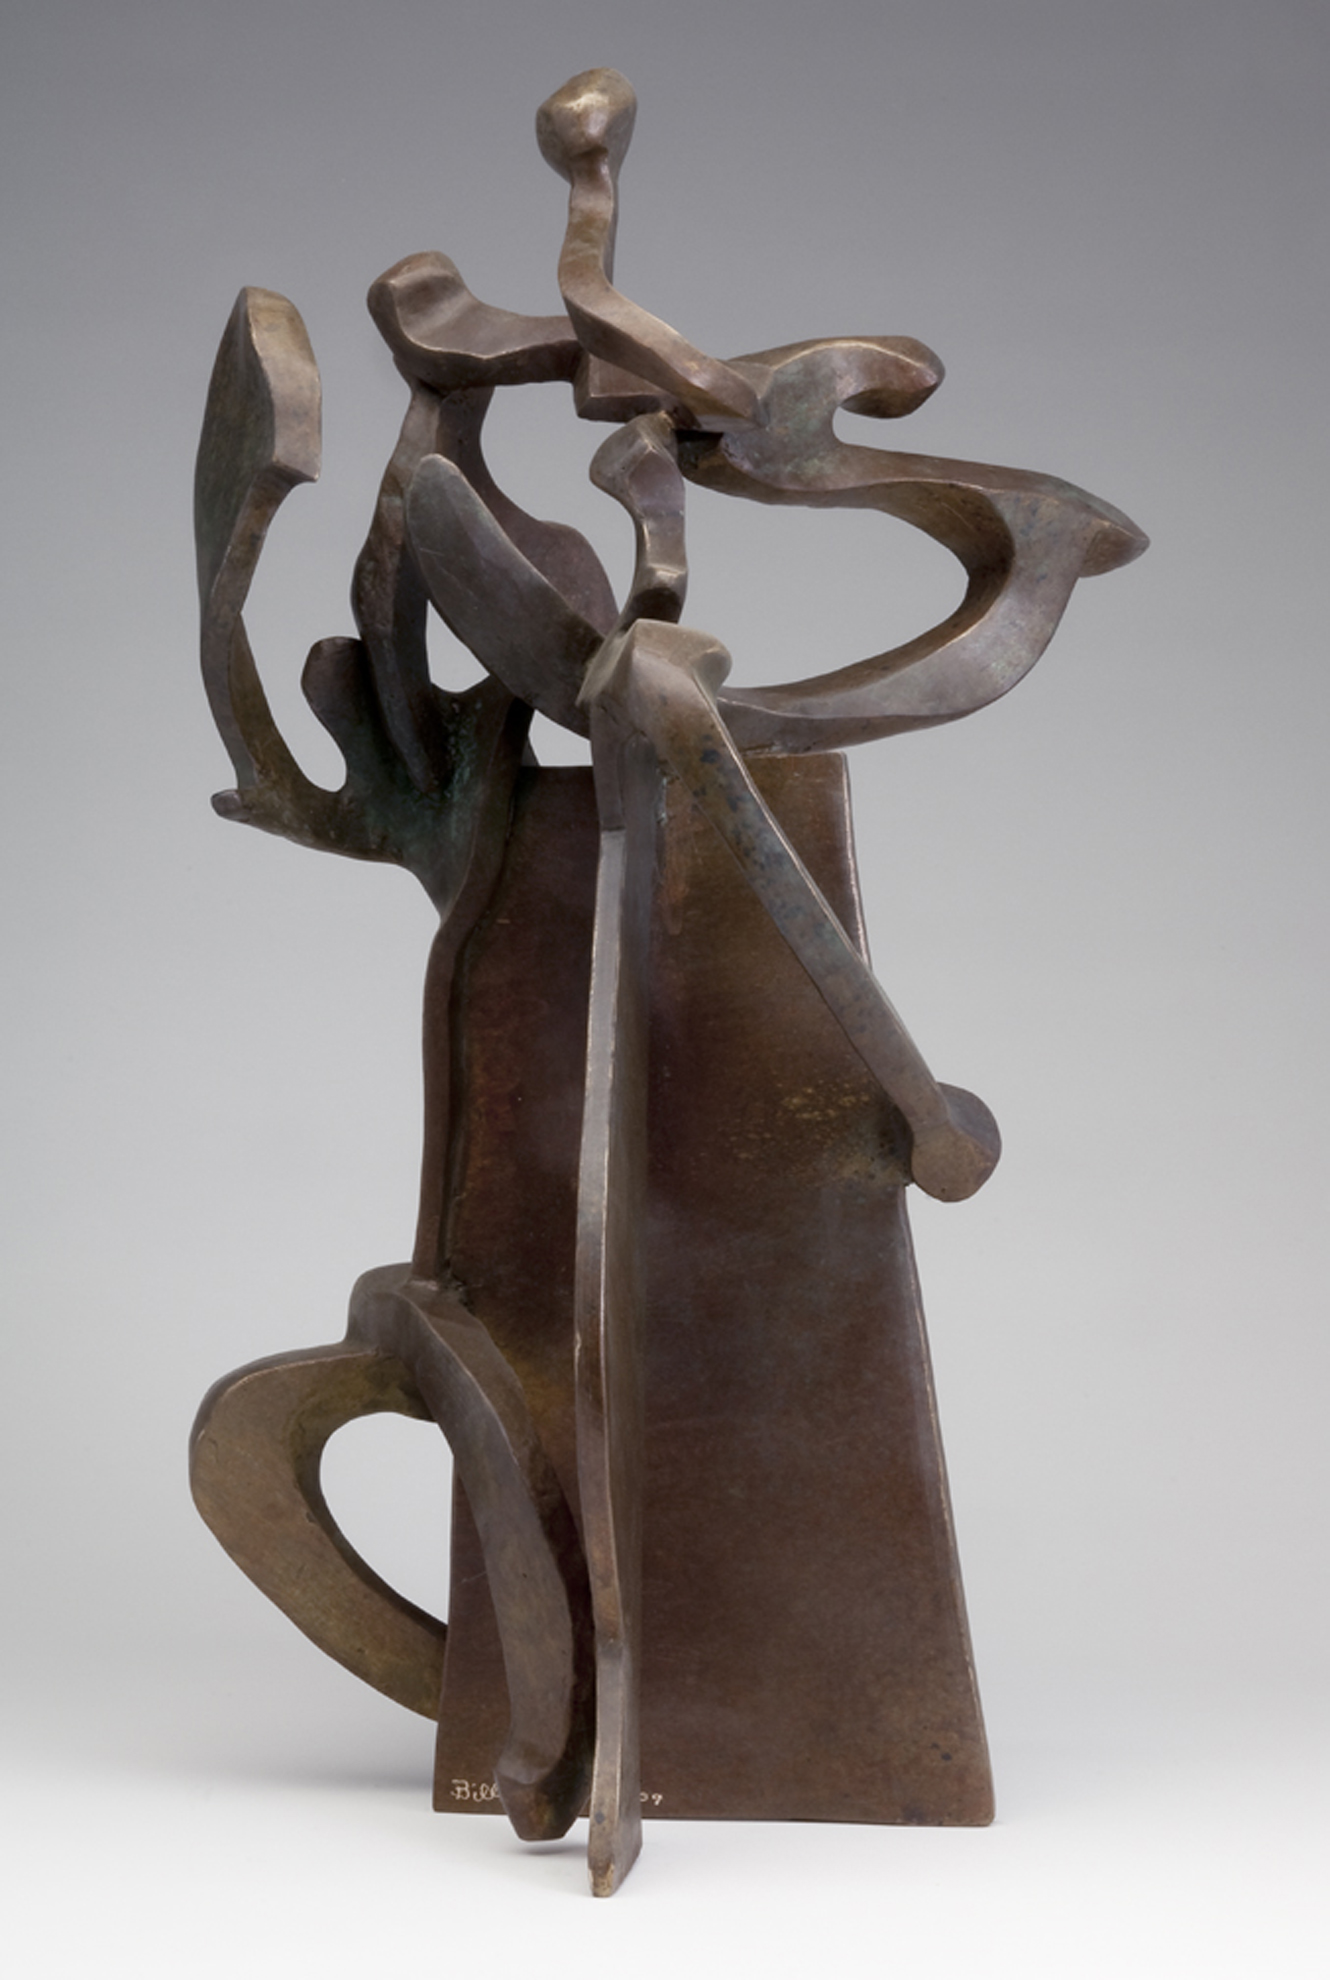 Sculptor Bill Barrett Pinnacle XIX fabricated bronze midsize sculpture 48x26x21